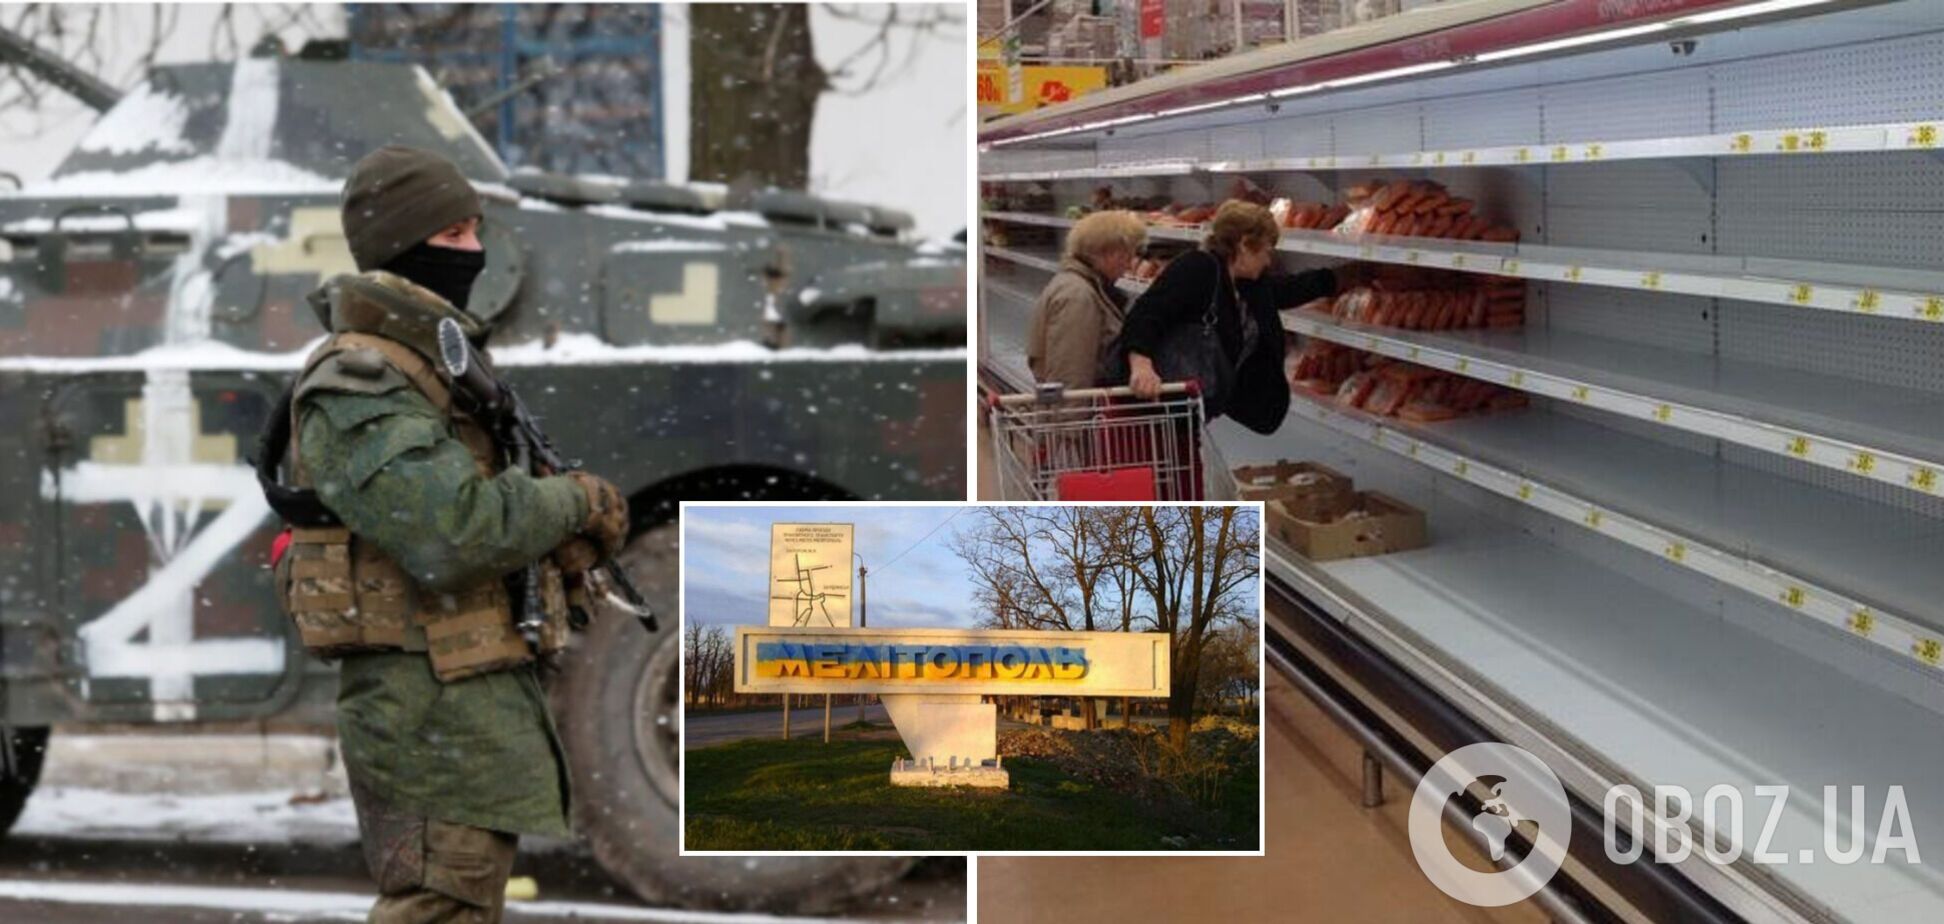 Заканчиваются продукты, оккупанты похищают людей на улицах: мэр Мелитополя рассказал о катастрофе в городе